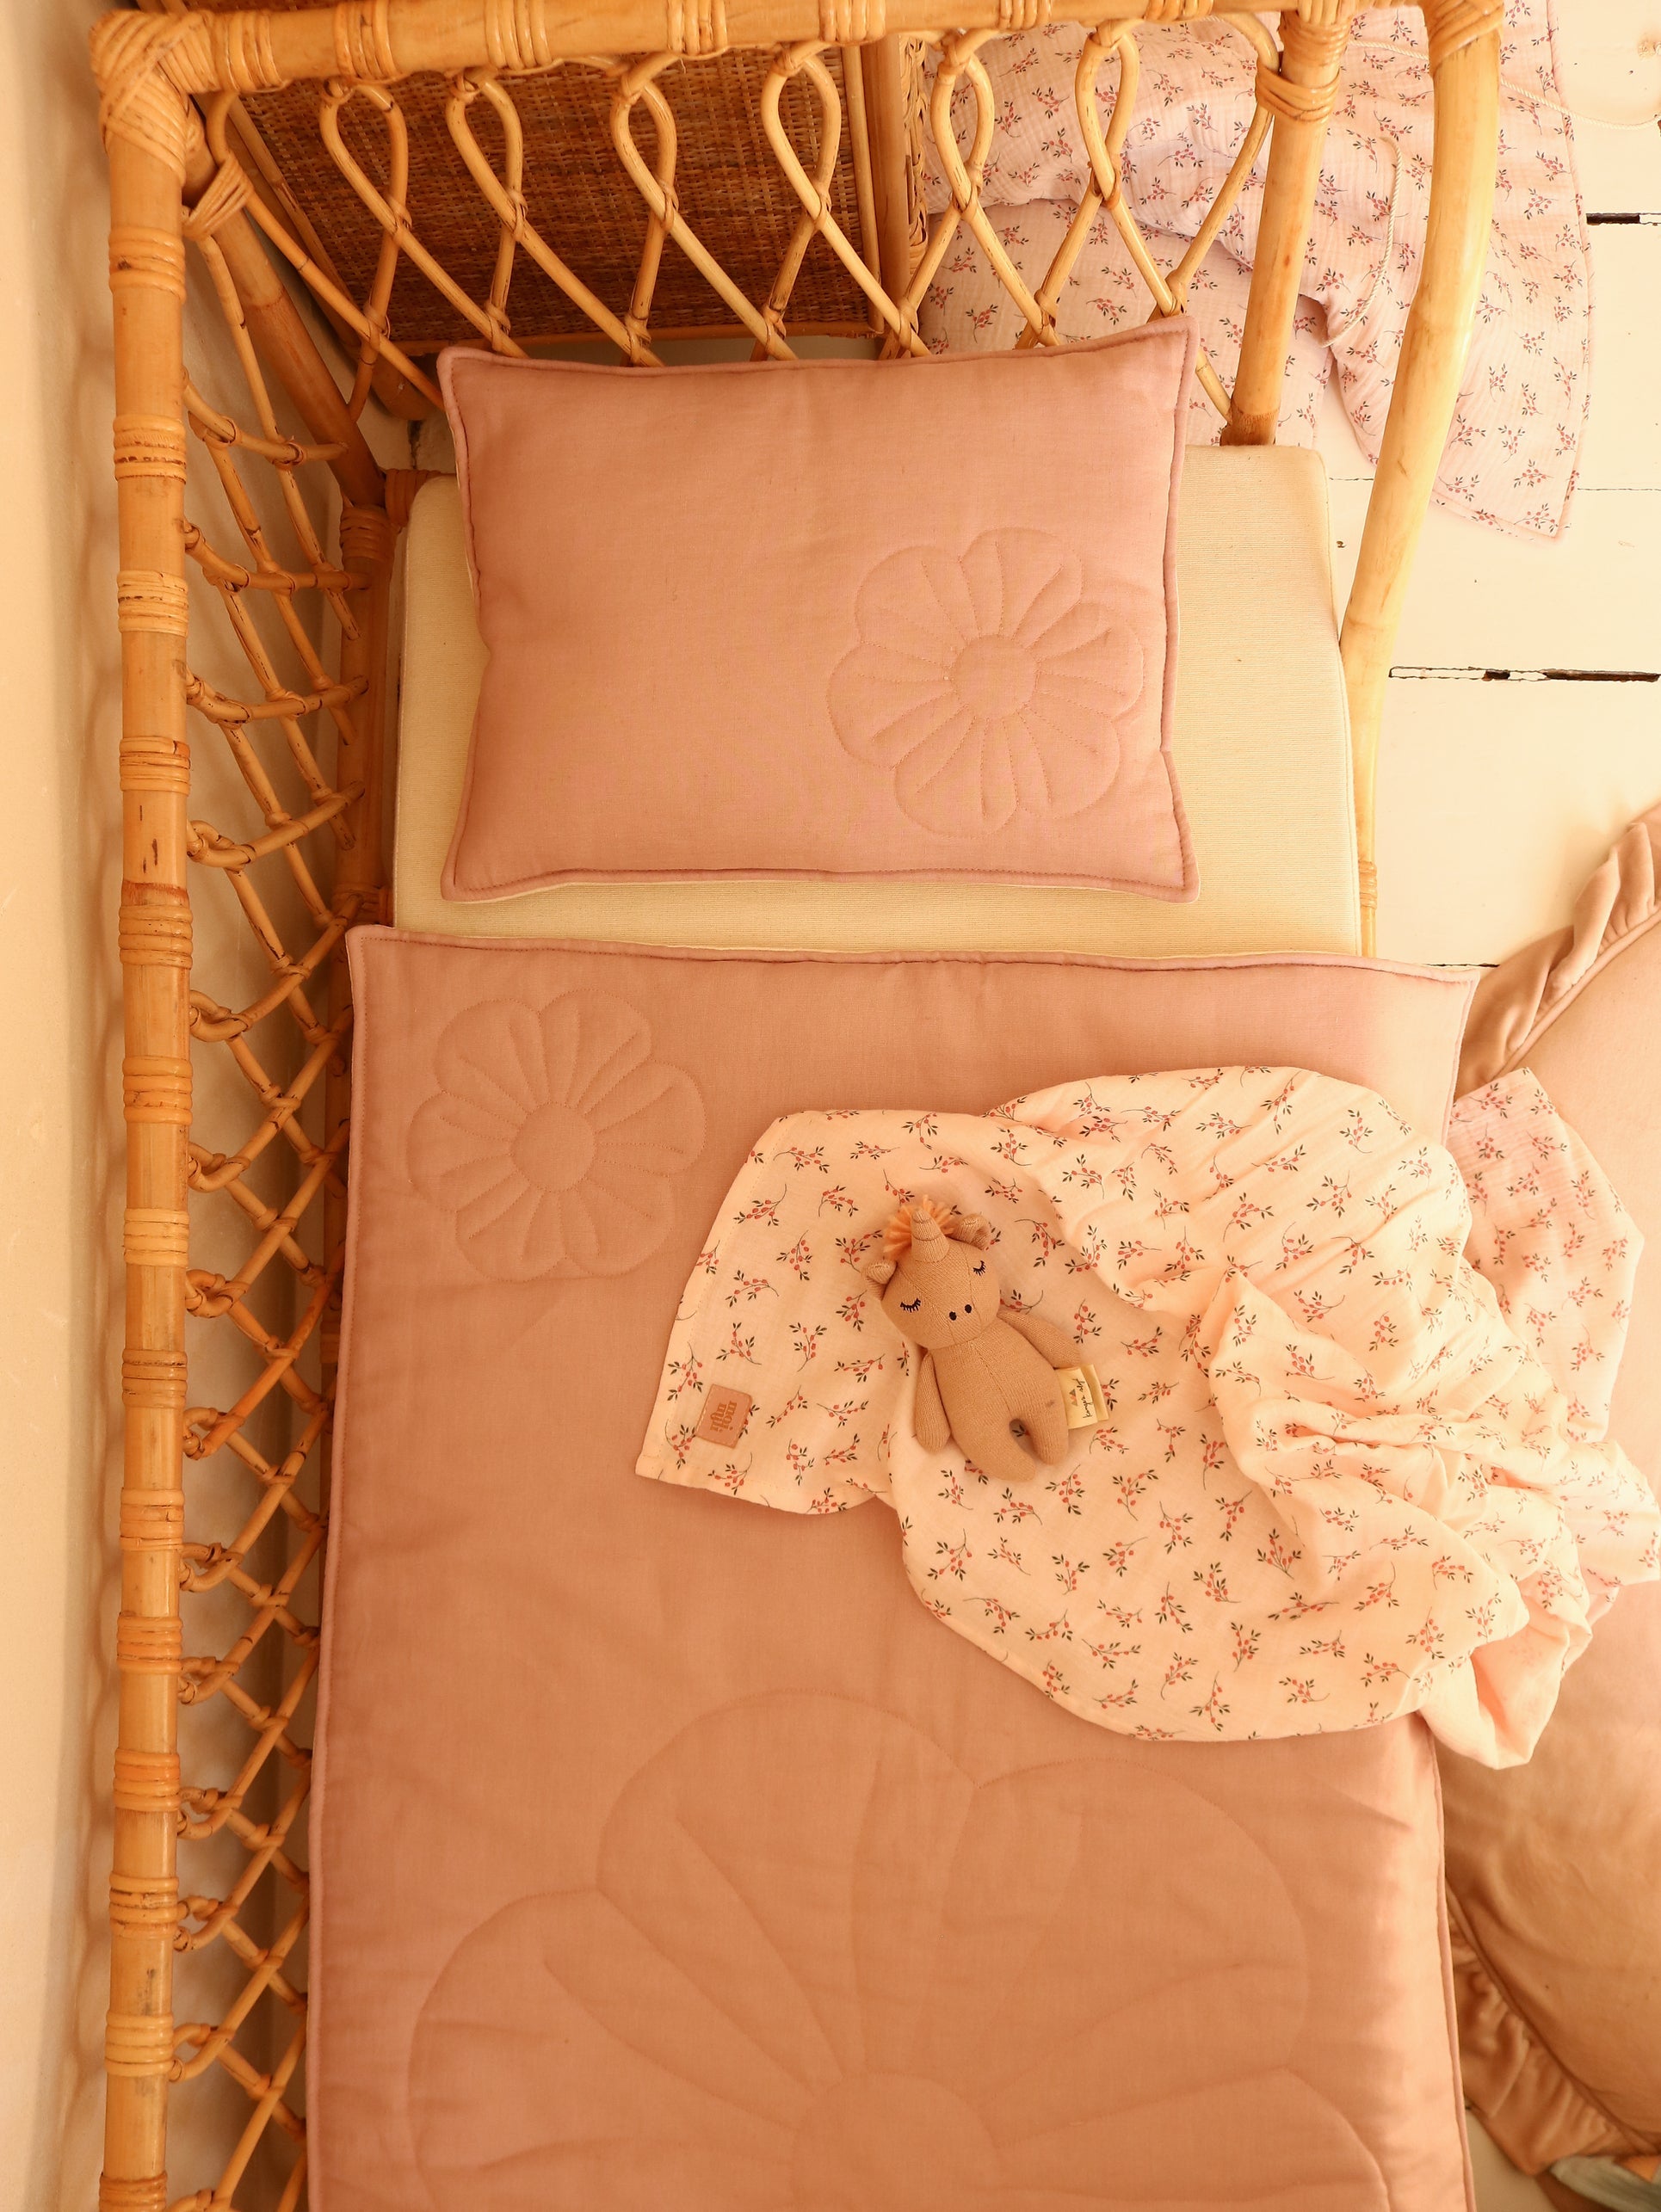 moimili Bettwäscheset Puderrosa Leinenblüte für Kinder - Eine gemütliche Bettwäsche in Puderrosa mit Leinenblüten-Muster für glückliche Kinder